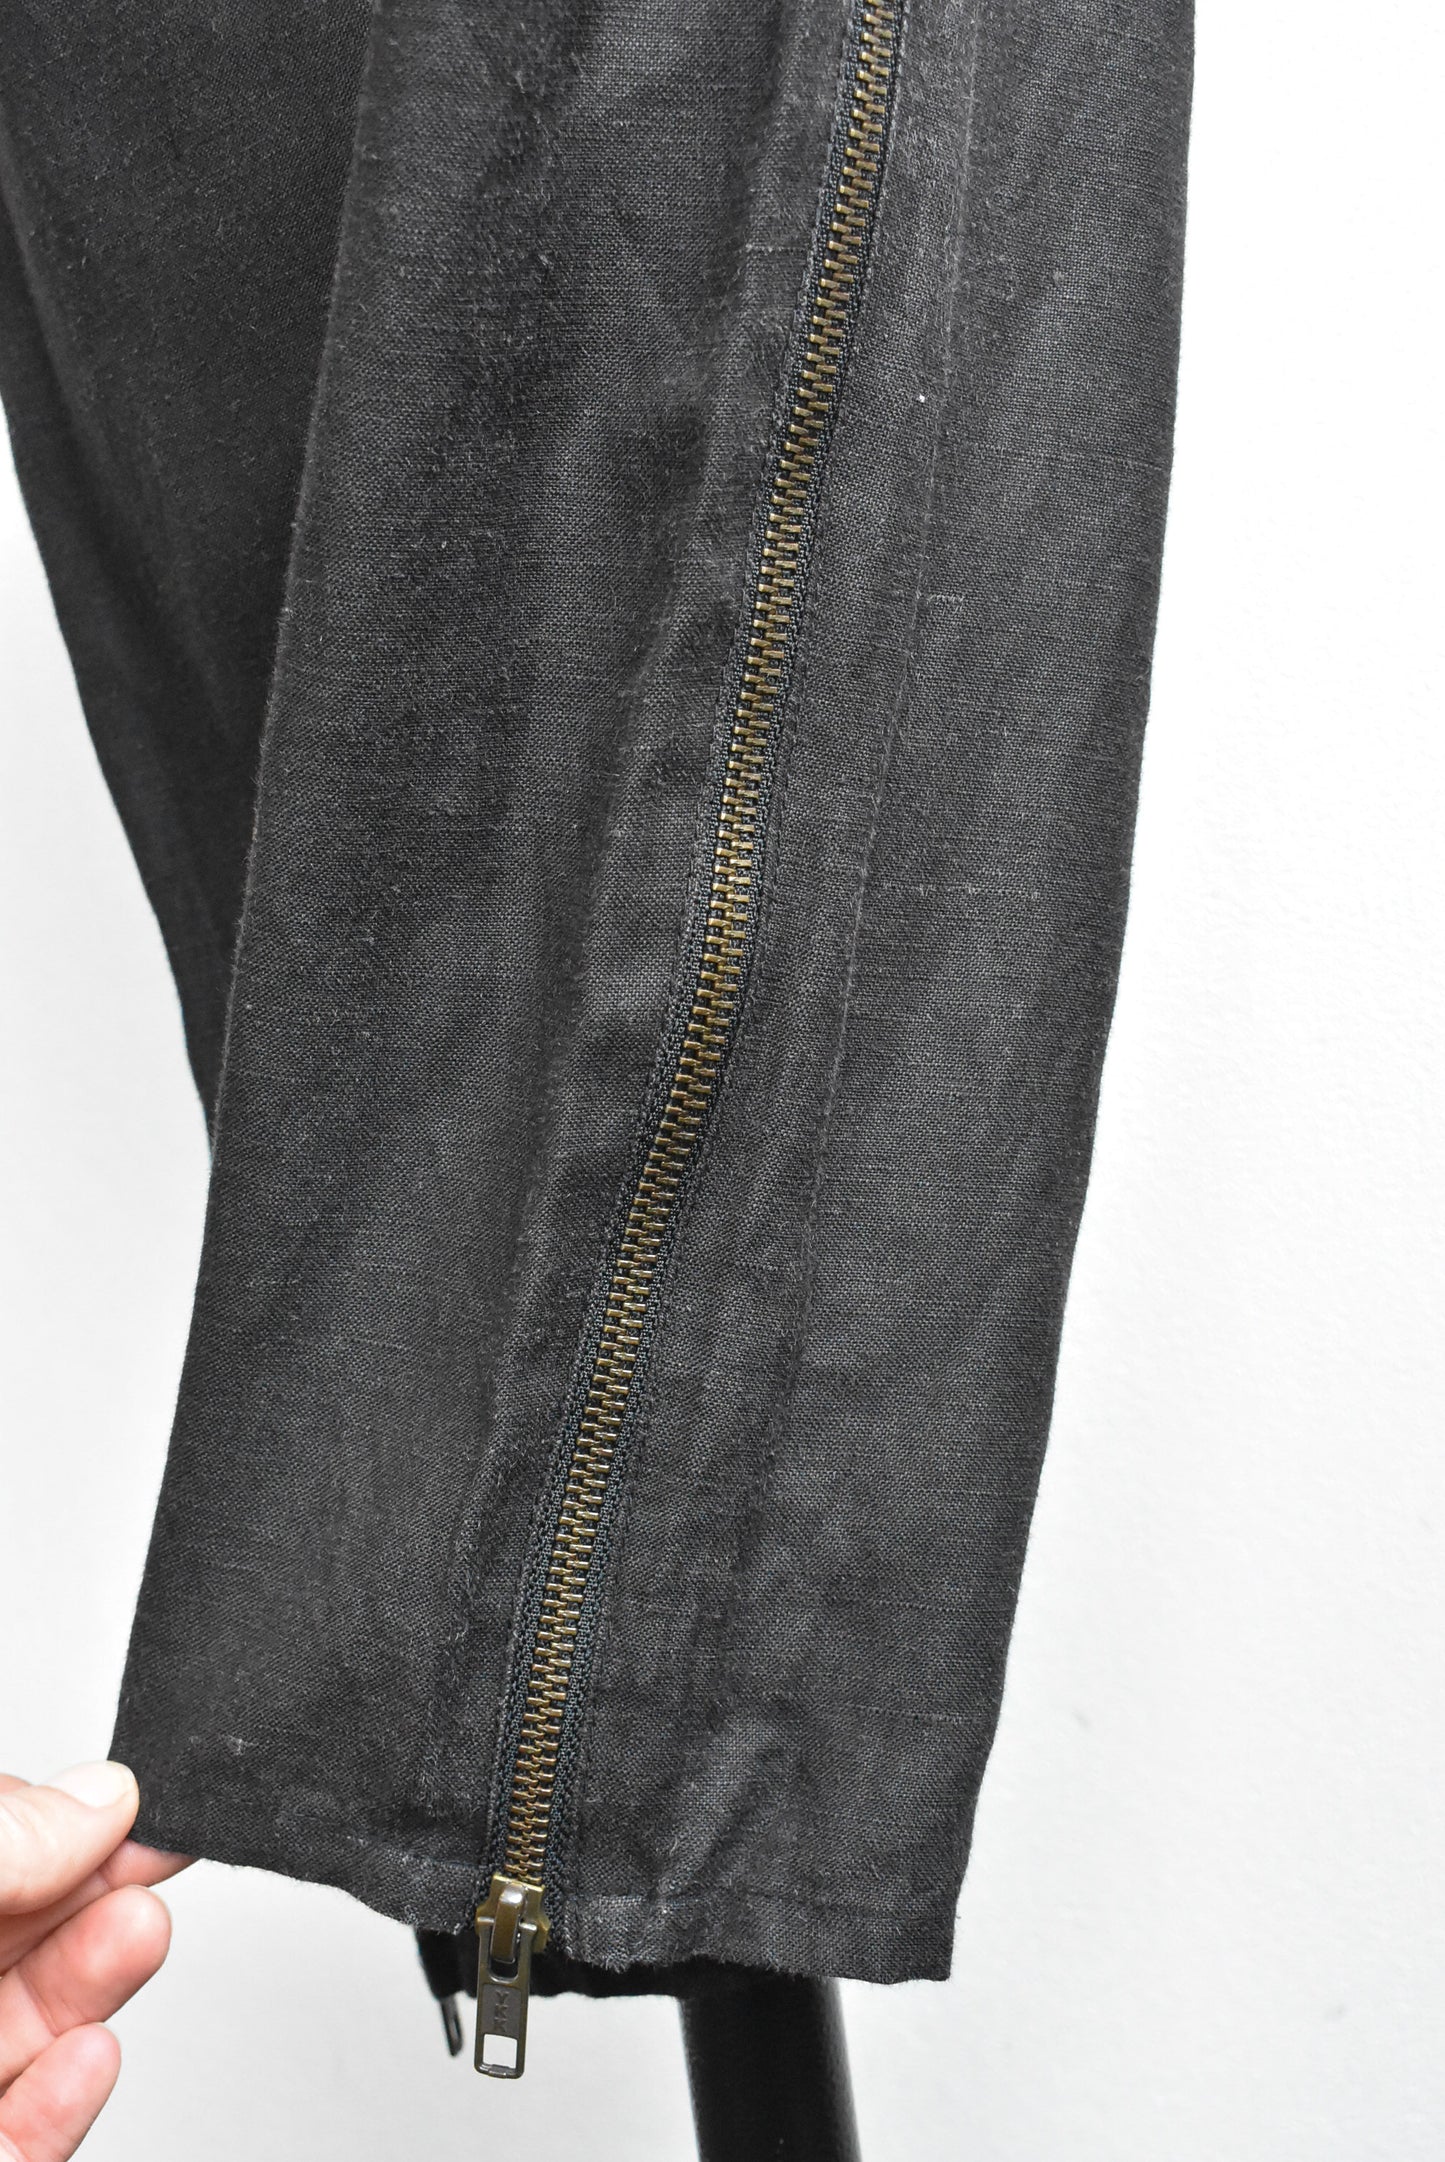 Turet Knuefermann linen-blend black trousers, size M